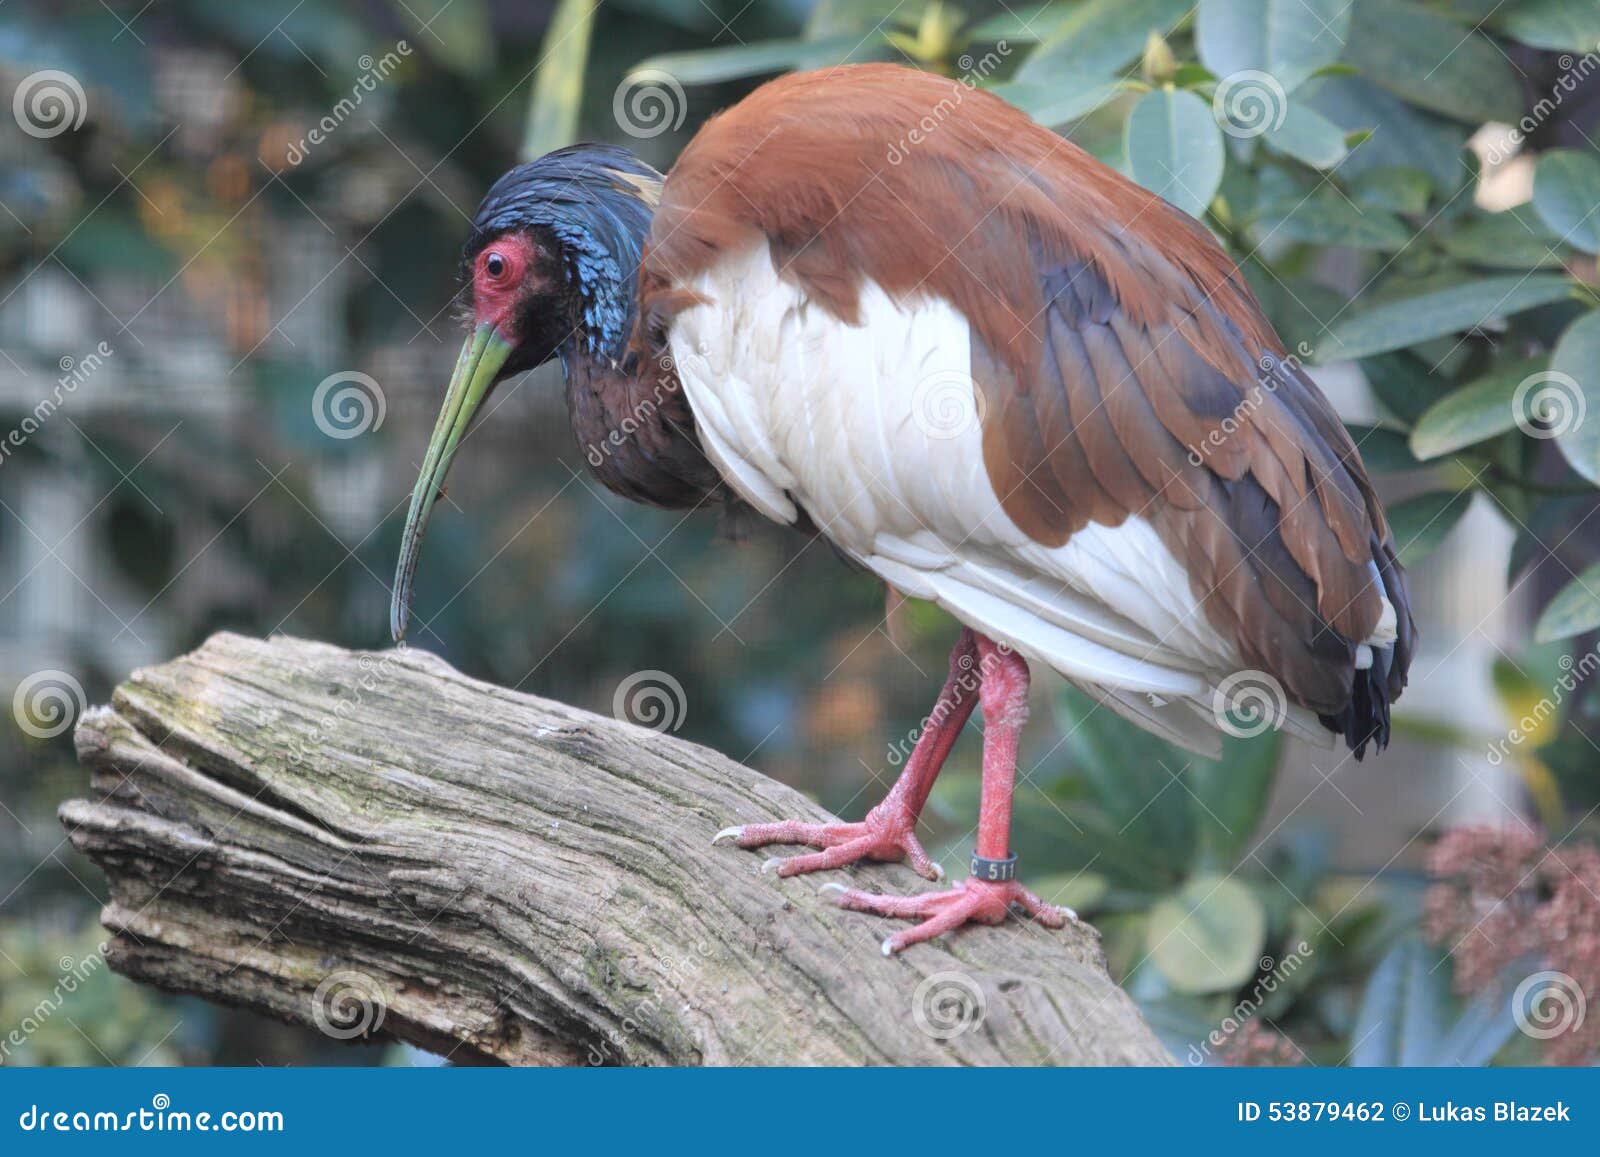 madagascar crested ibis